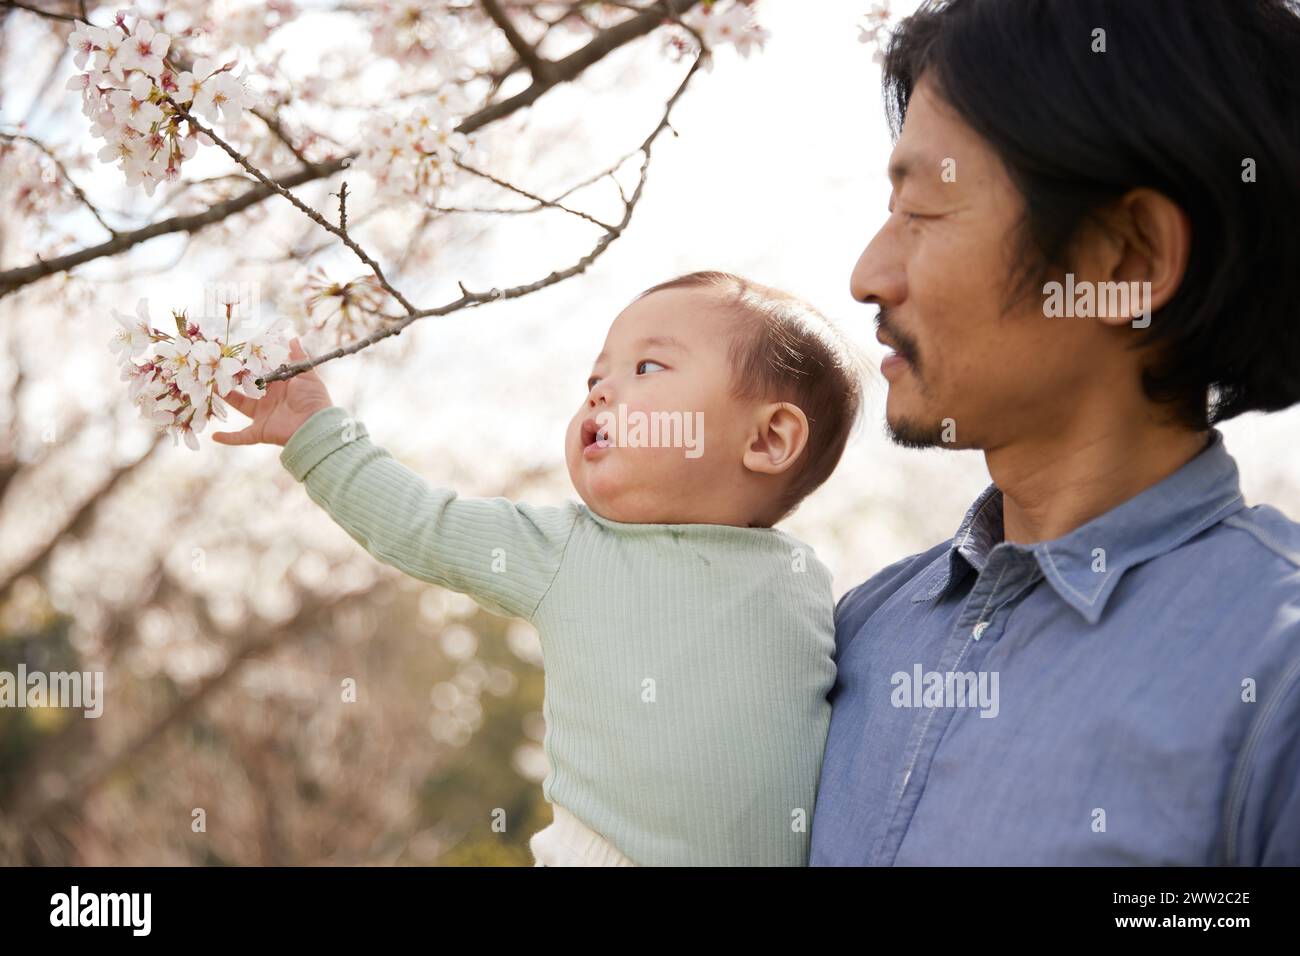 Ein Mann, der ein Baby hält und einen blühenden Baum ansieht Stockfoto